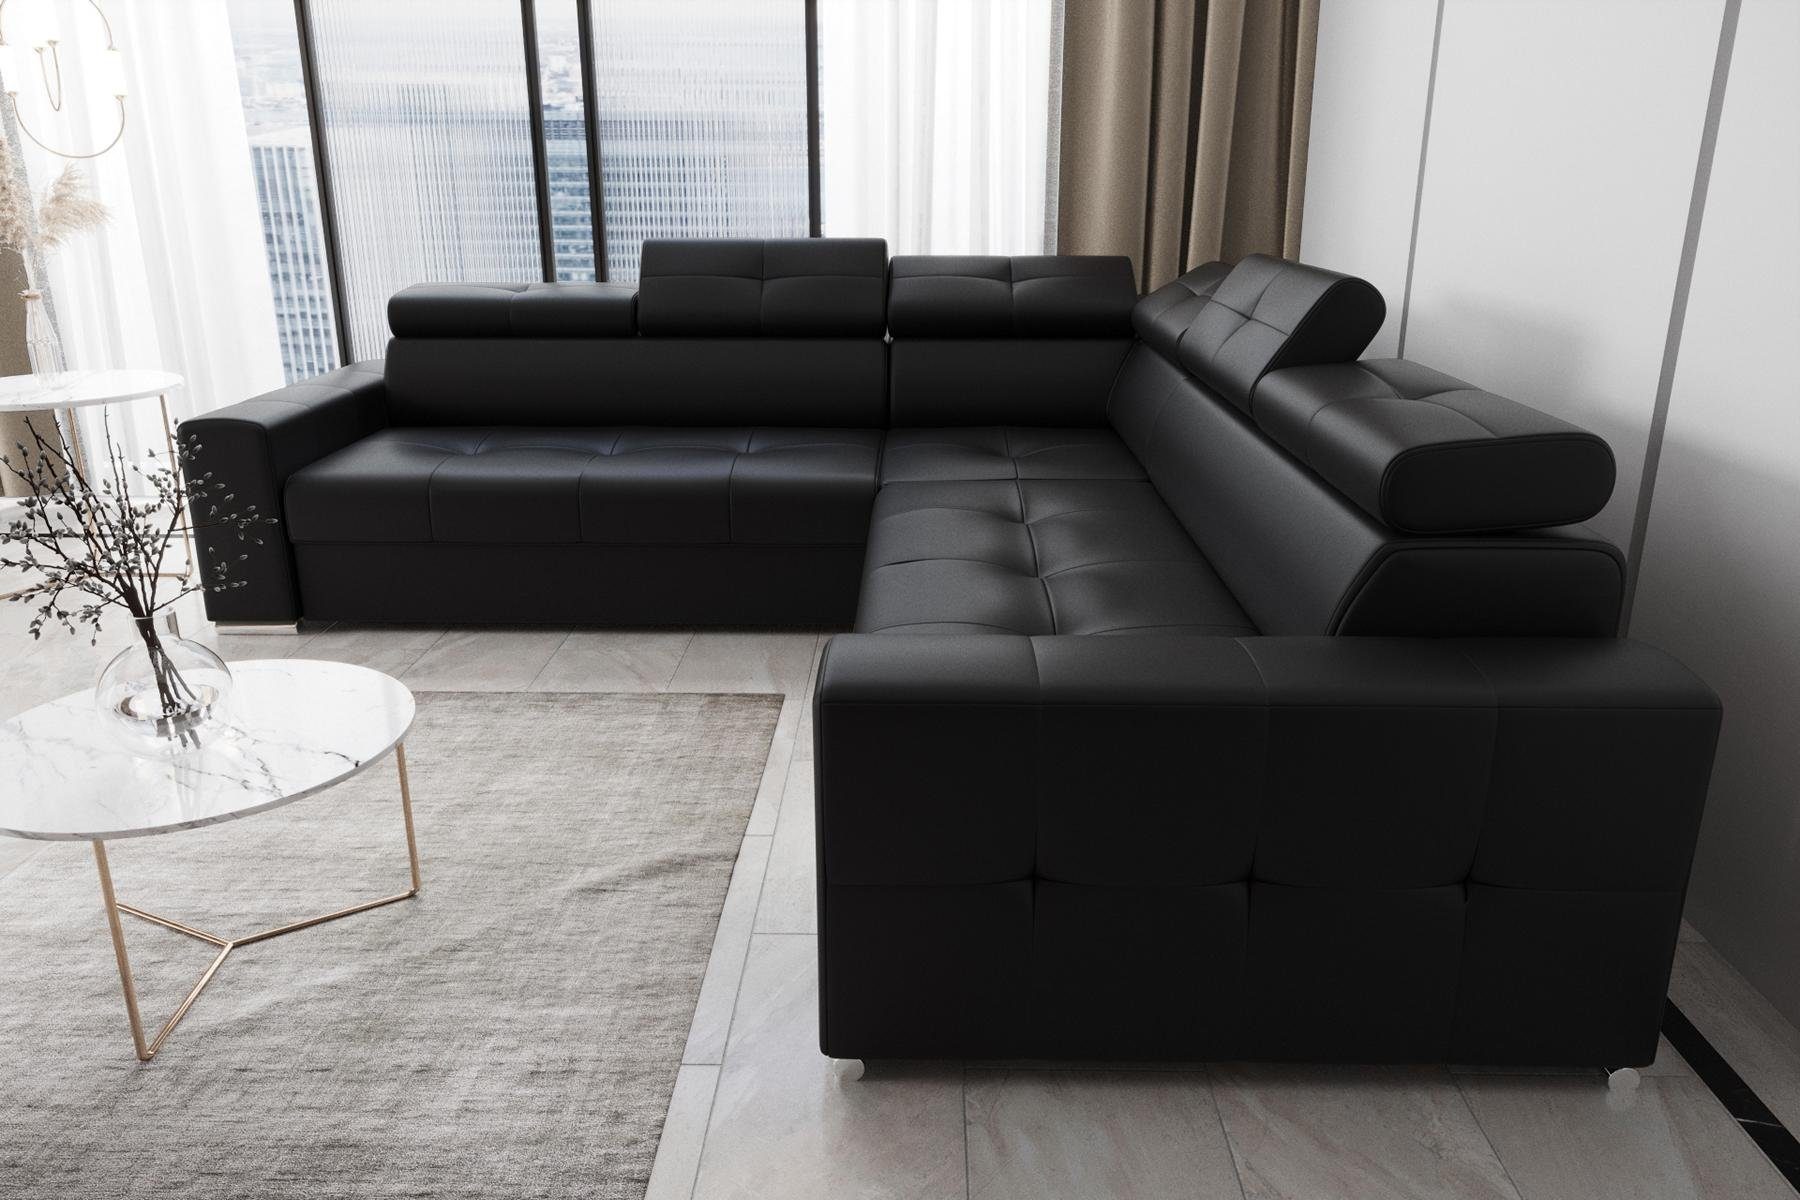 Textil Modern Europe in Couch, Leder L Made Wohnzimmer Ecksofa Luxus JVmoebel Schwarz Ecksofa Form